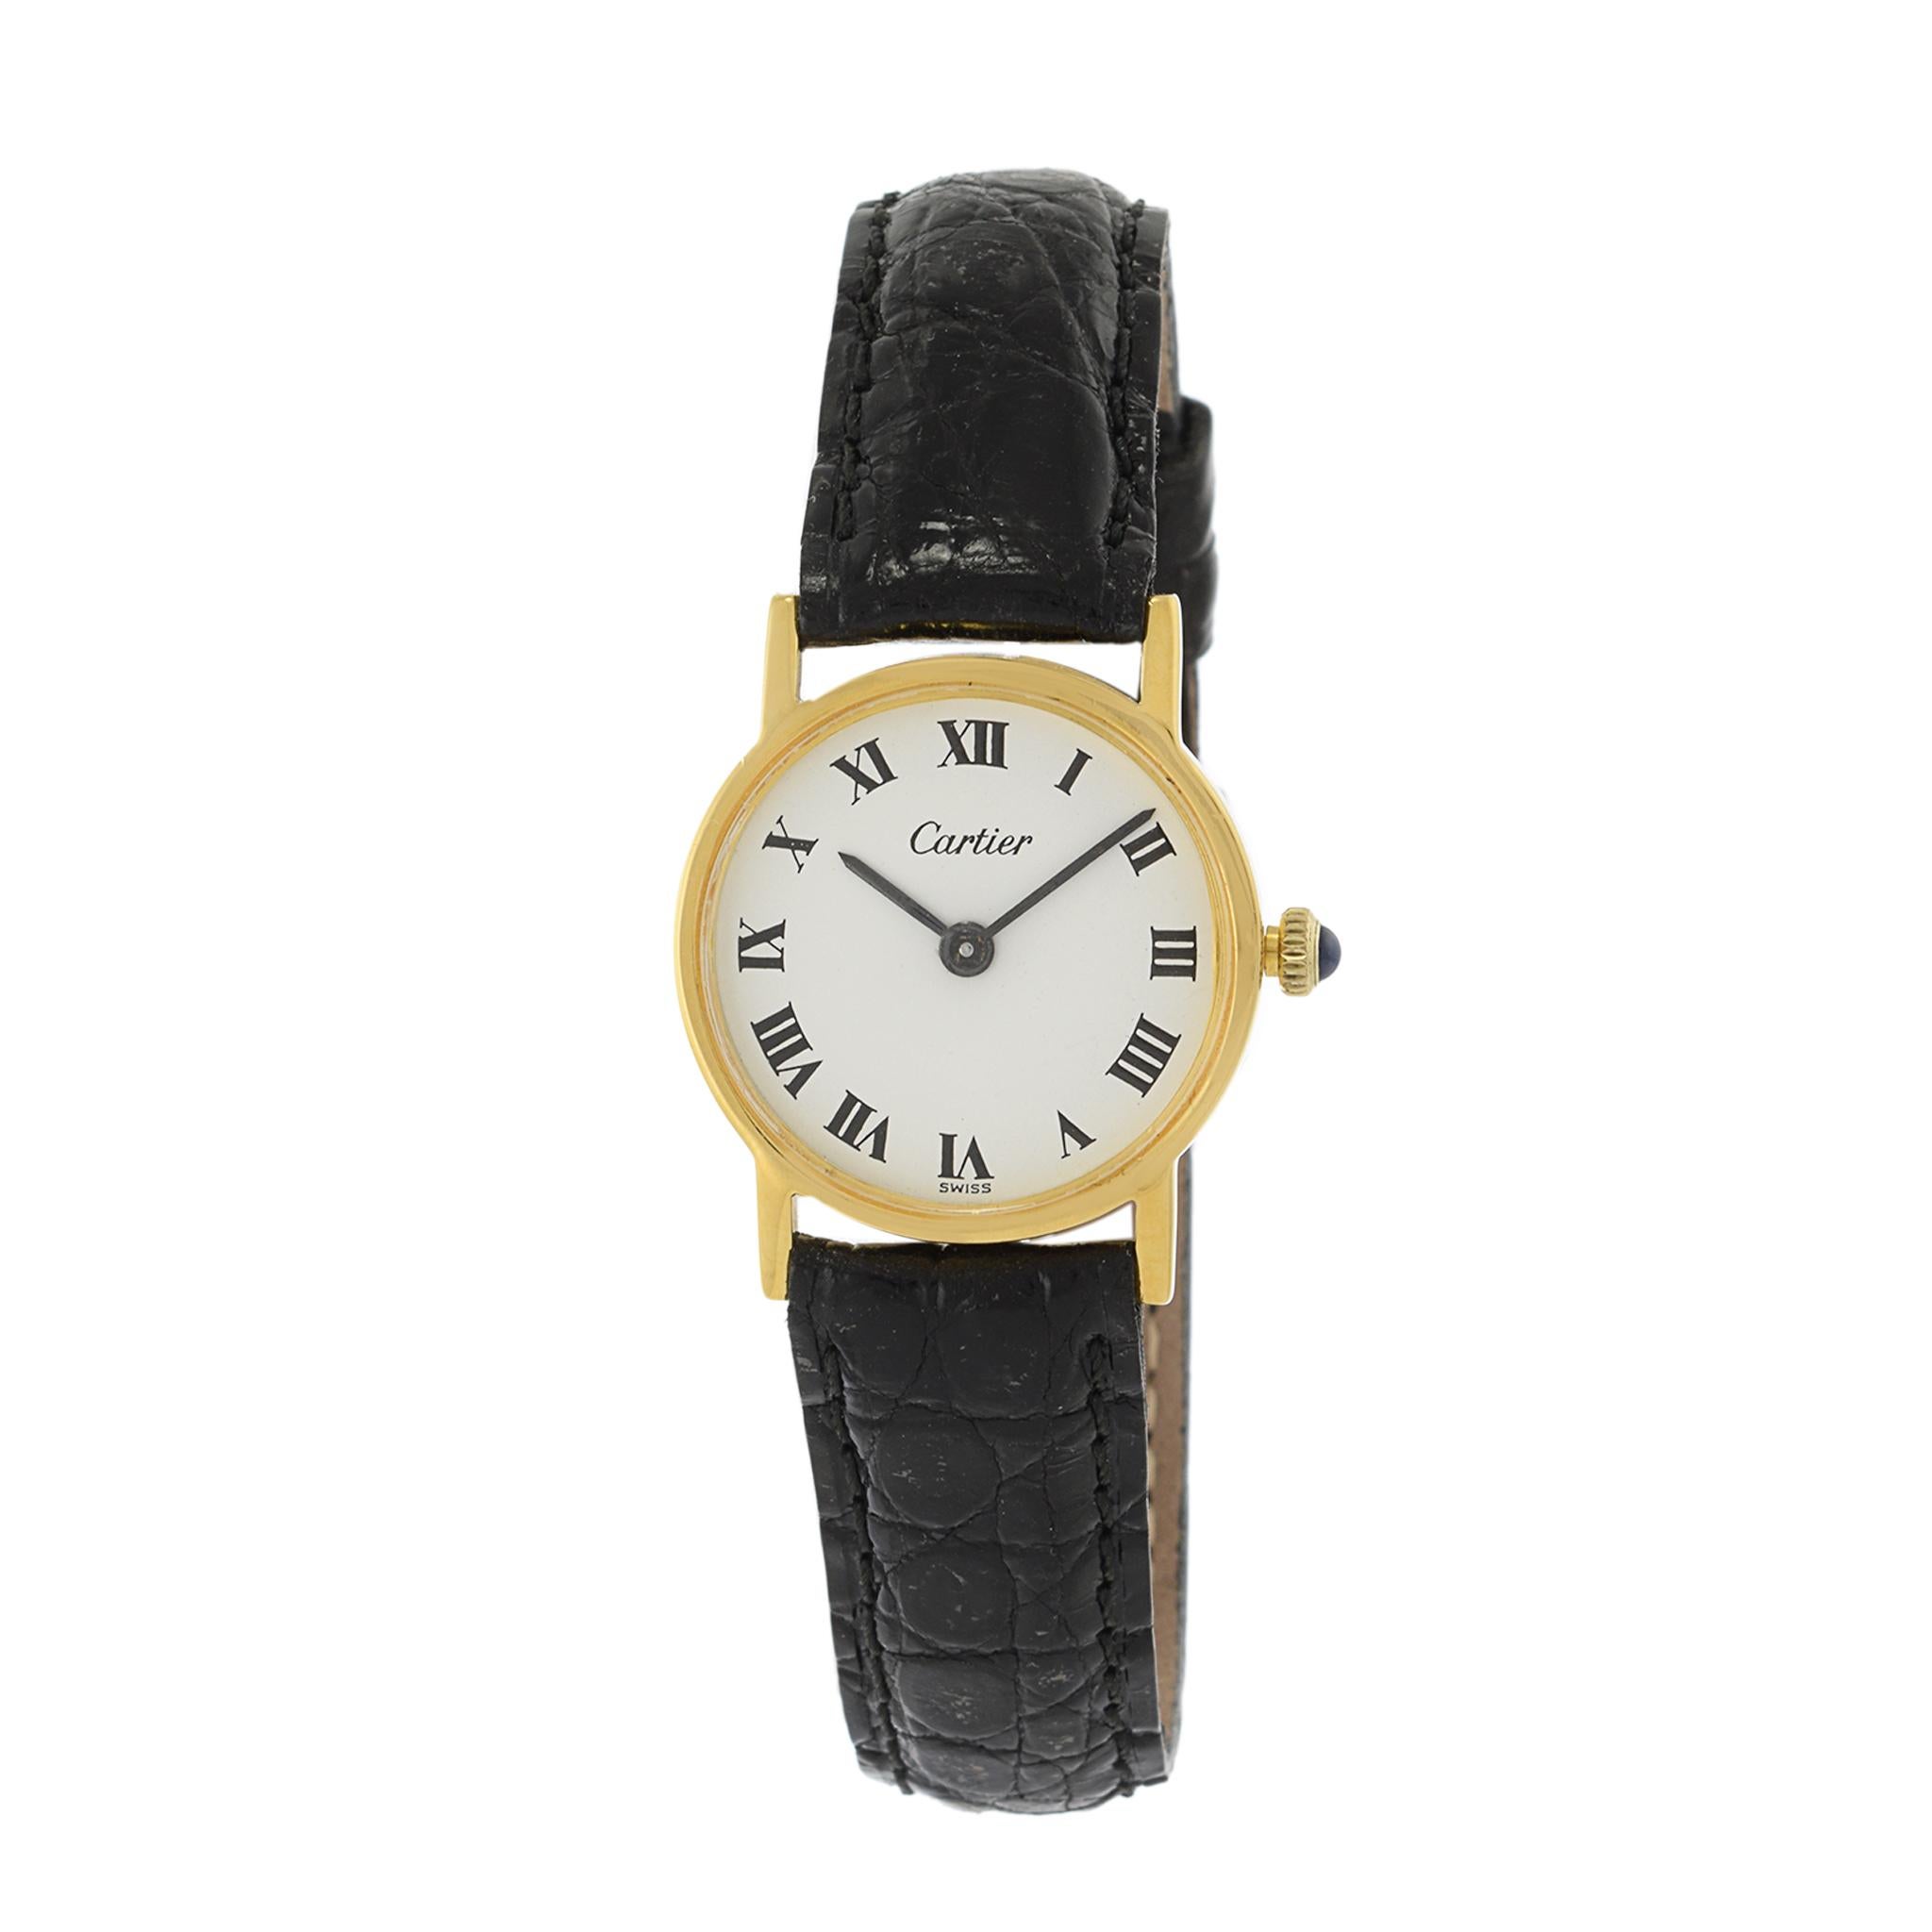 Il s'agit d'une montre Cartier Calatrava des années 1980 en vermeil. Le boîtier de cette montre mesure 24 mm de diamètre.

La montre est animée par un mouvement à remontage manuel Cartier. Il a été révisé.

Le cadran de la montre est blanc avec des